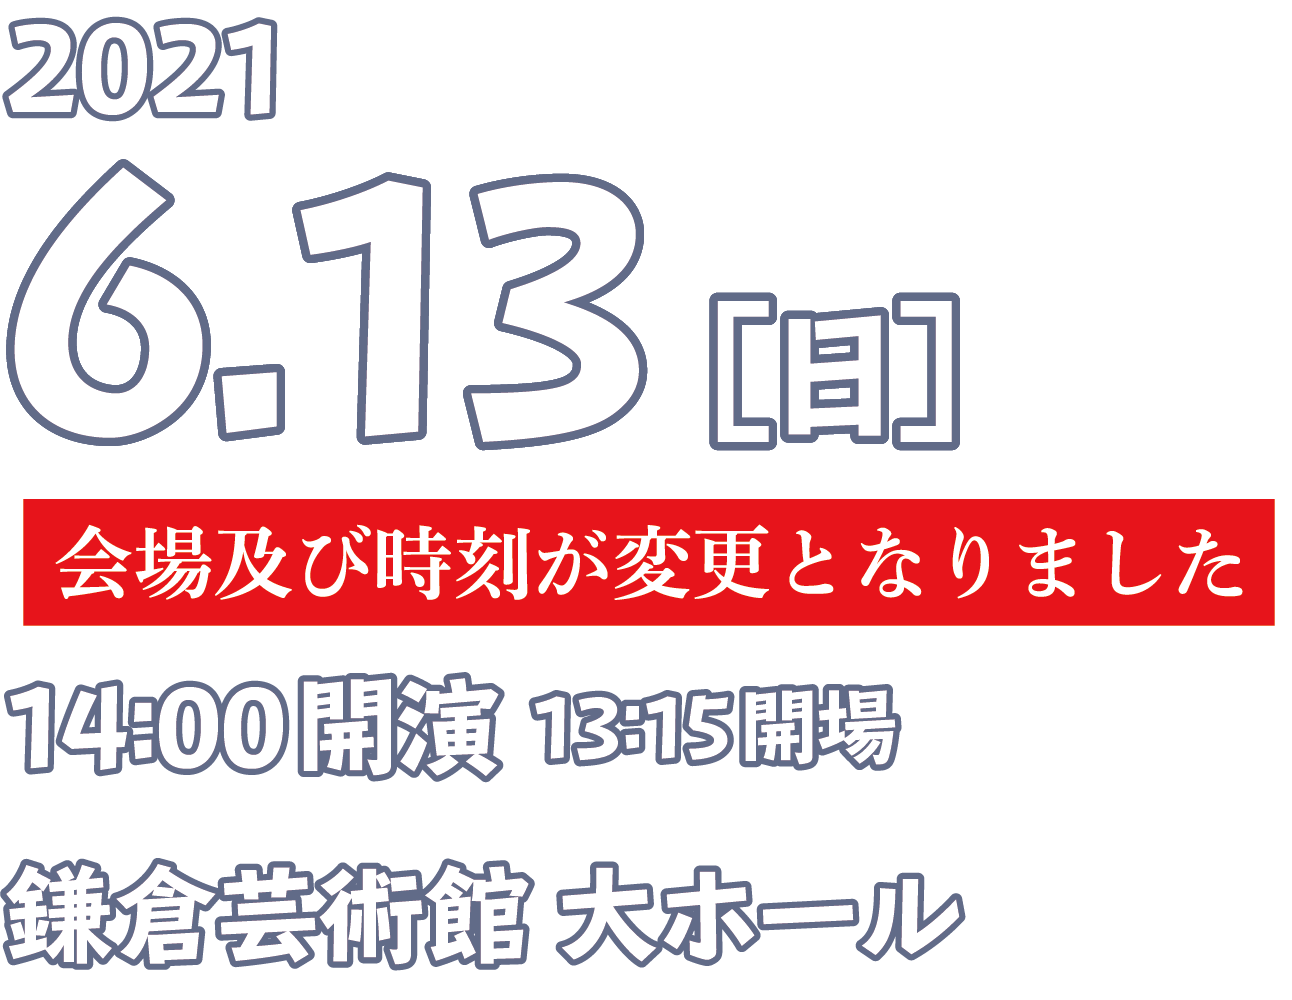 2021 6.13[日] 14:00開演 13:15開場 鎌倉芸術館 大ホール